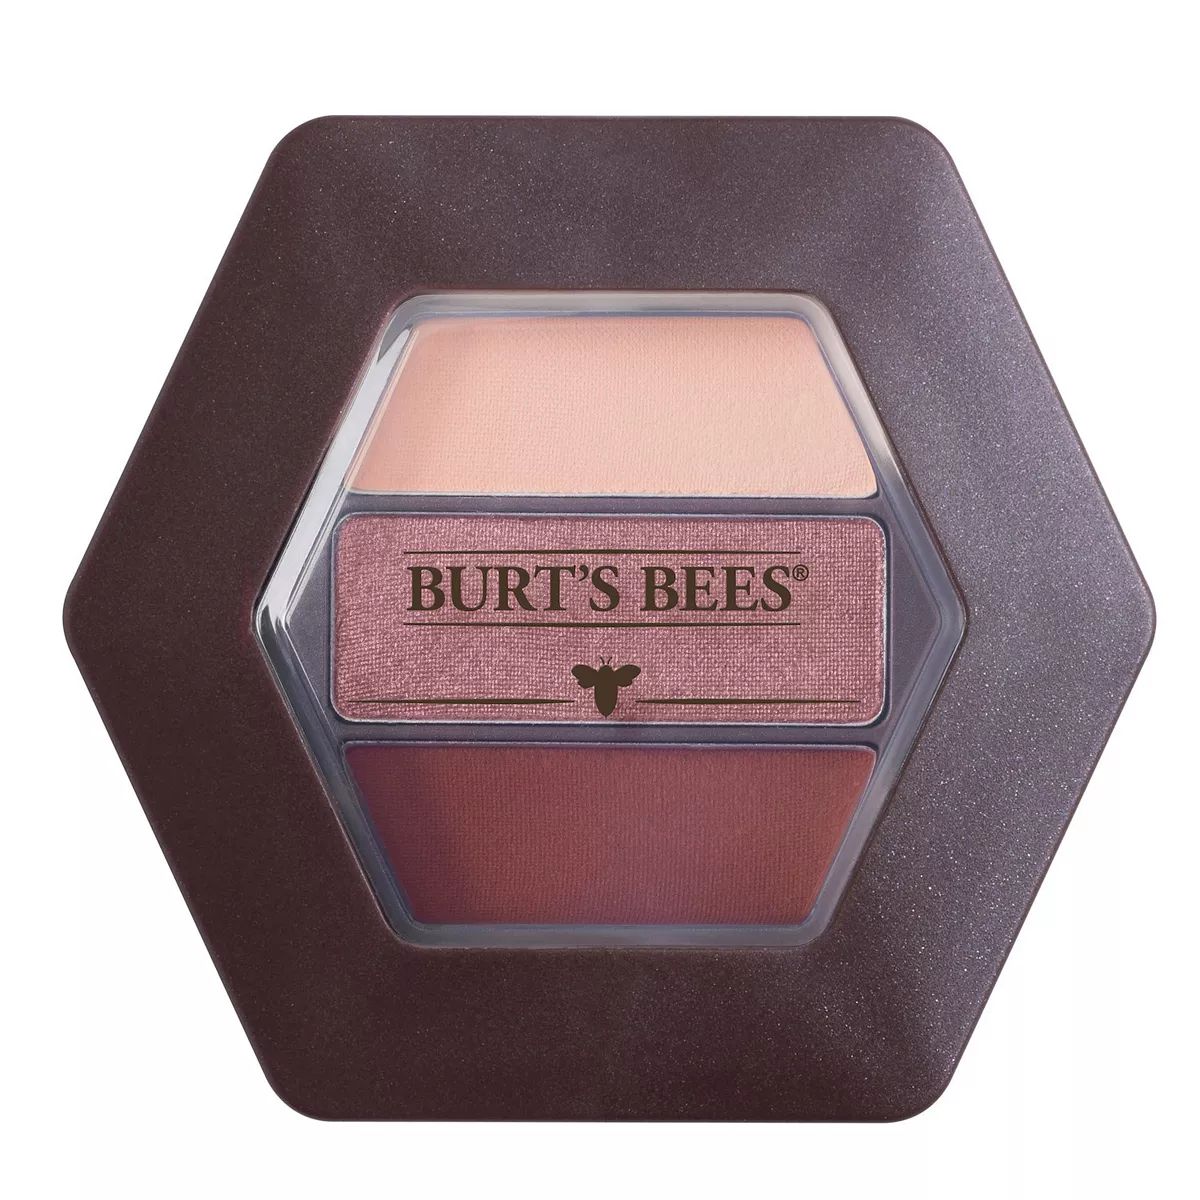 Burt's Bees Eye Shadow Trio | Kohl's